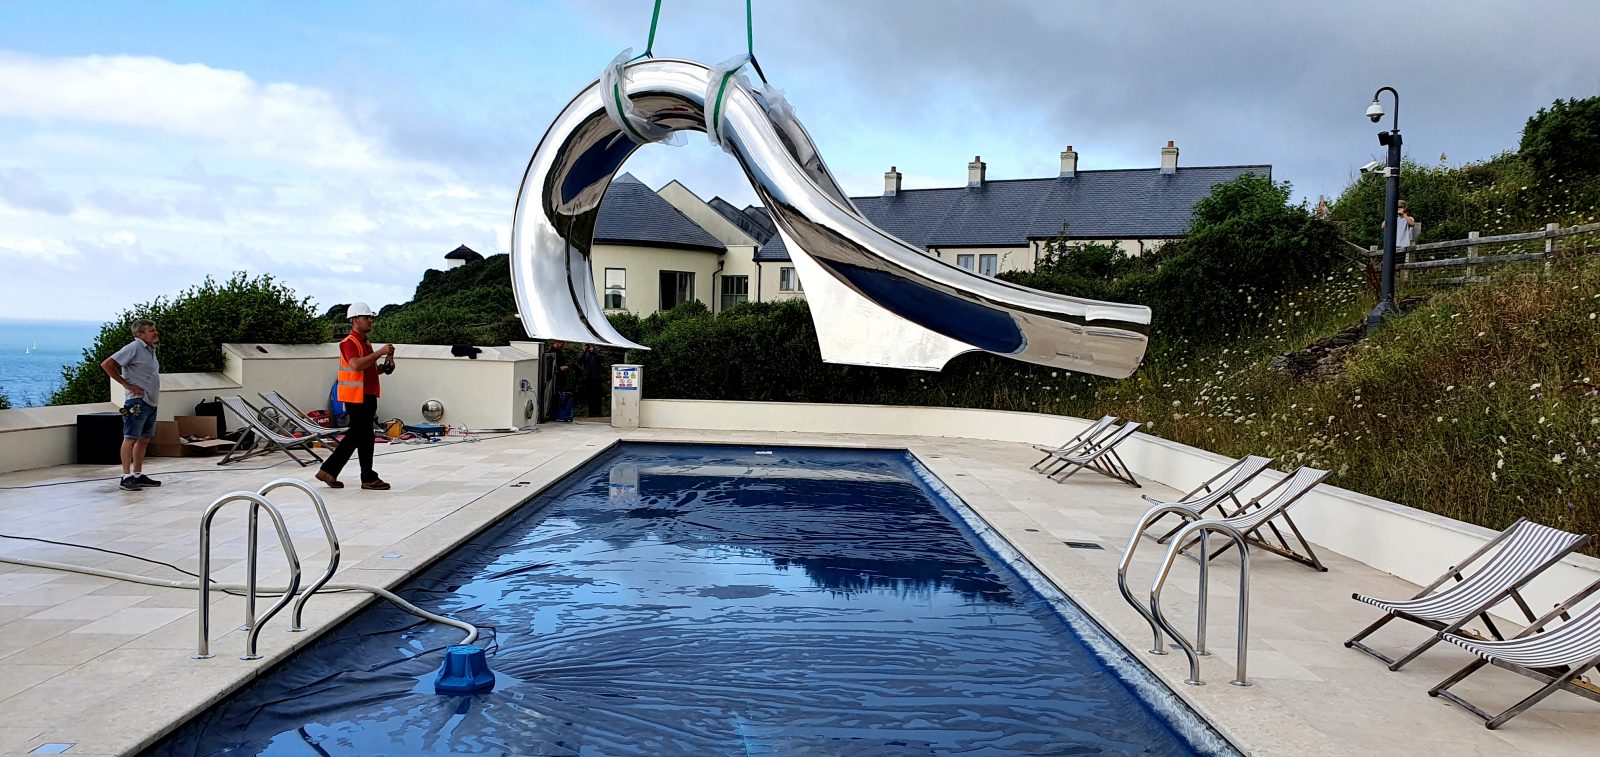 Splinterworks luxury pool slide at Gara Rock Hotel